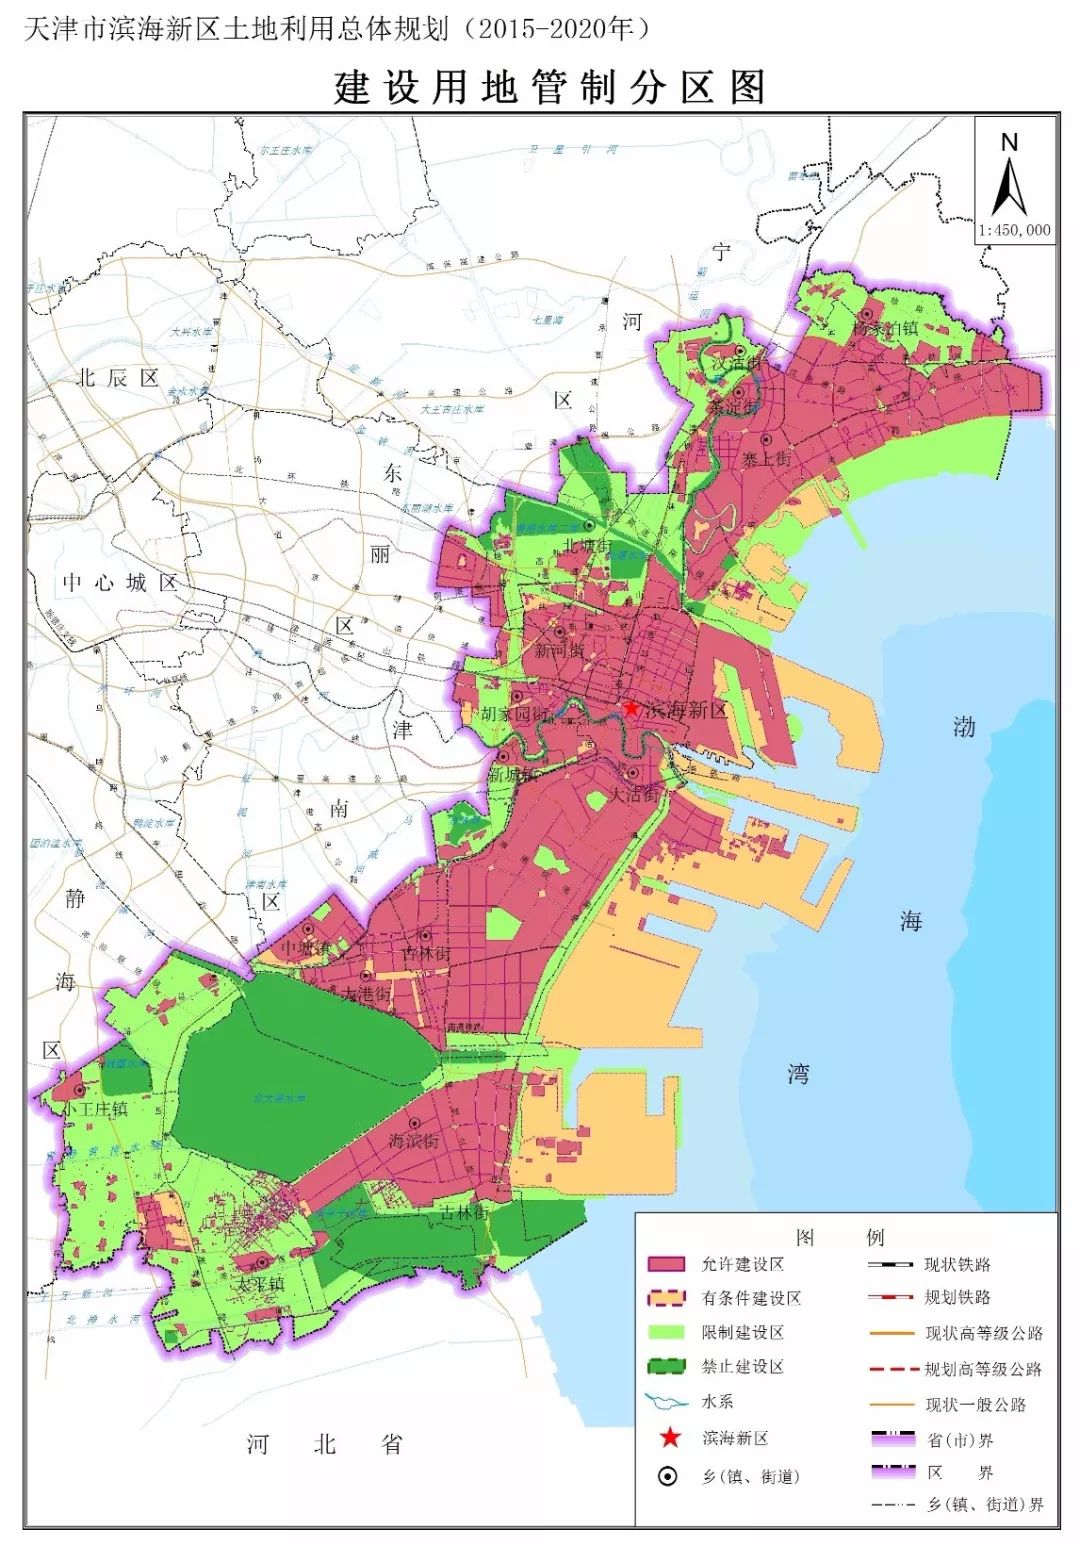 滨海新区土地利用总体规划发布!2020年将建成这样